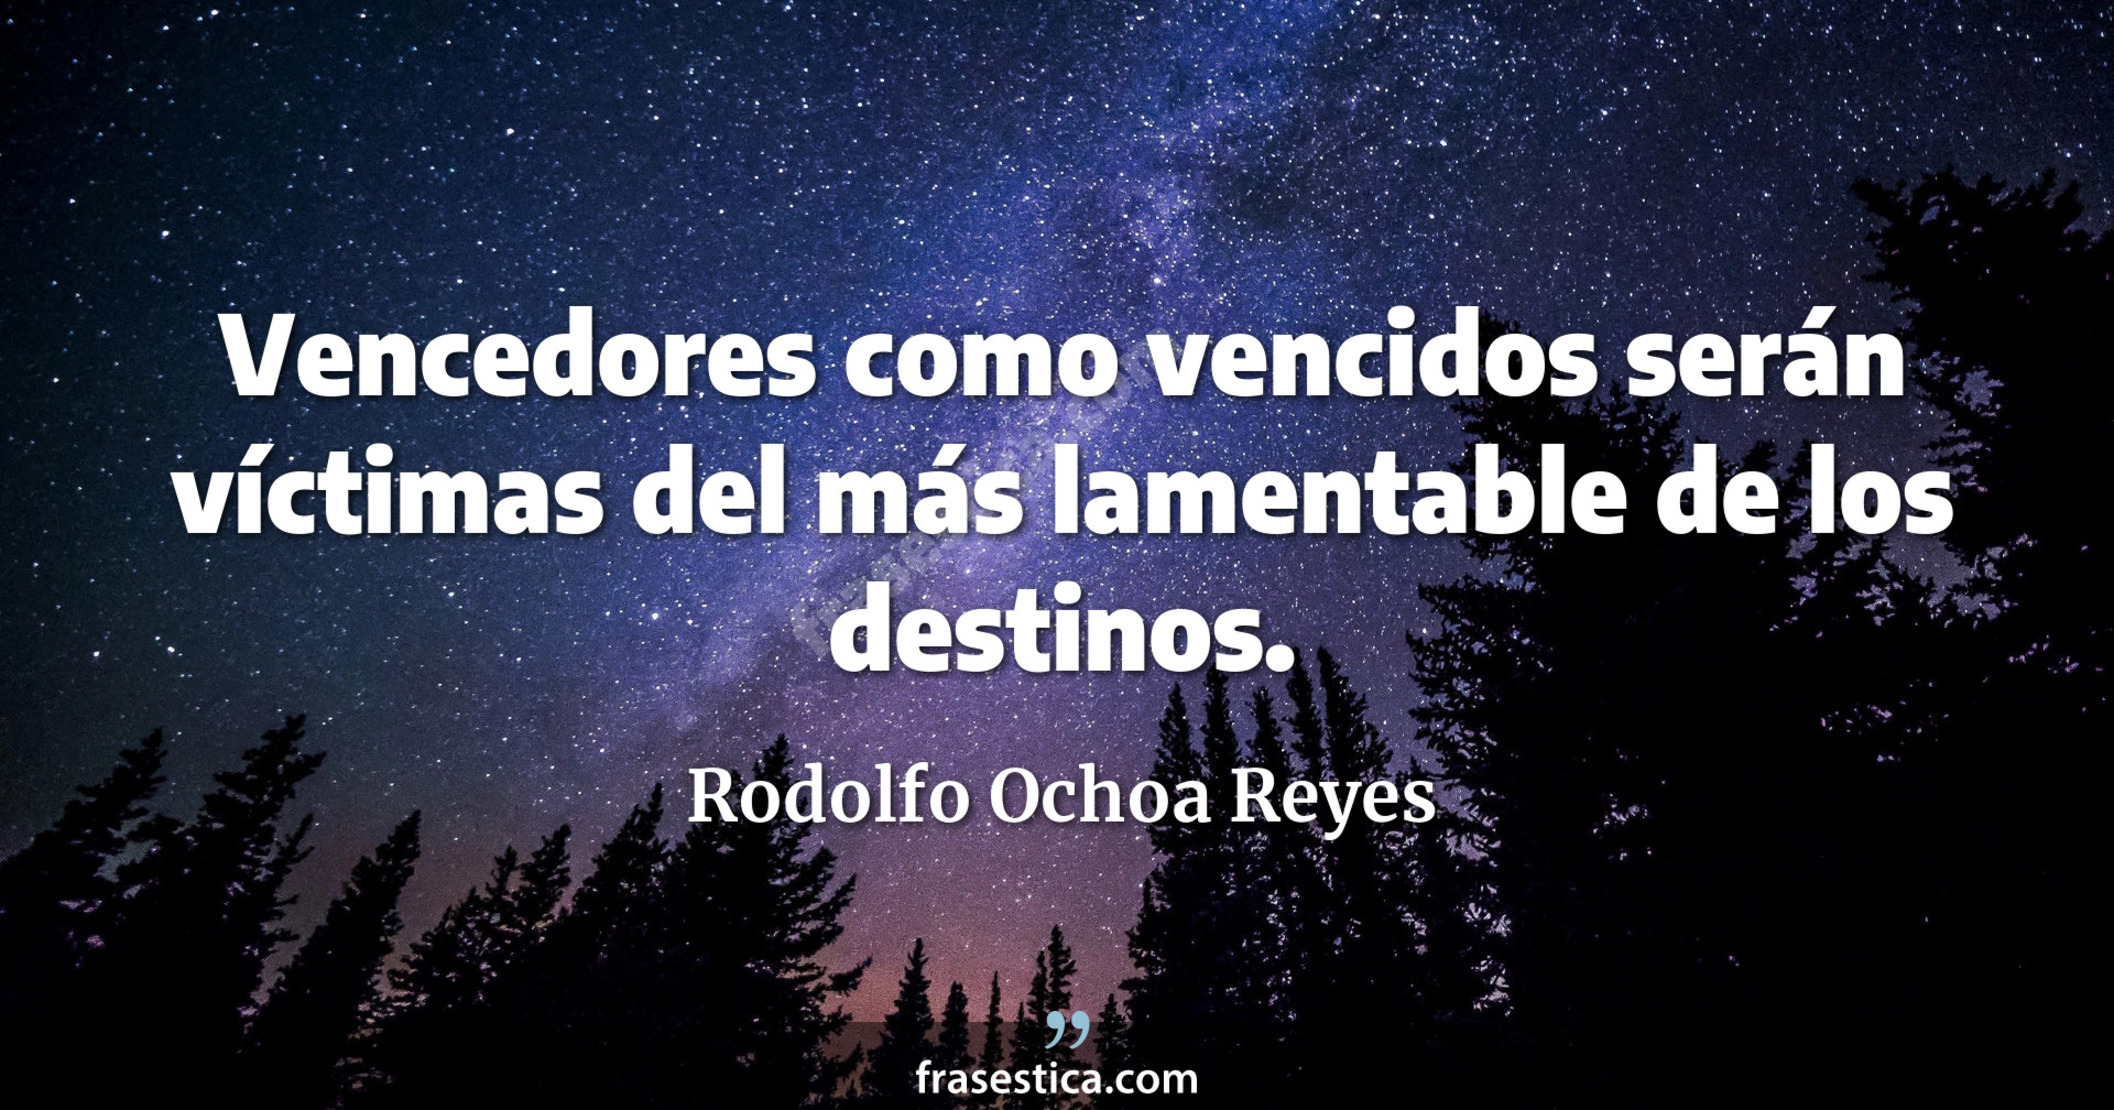 Vencedores como vencidos serán víctimas del más lamentable de los destinos. - Rodolfo Ochoa Reyes